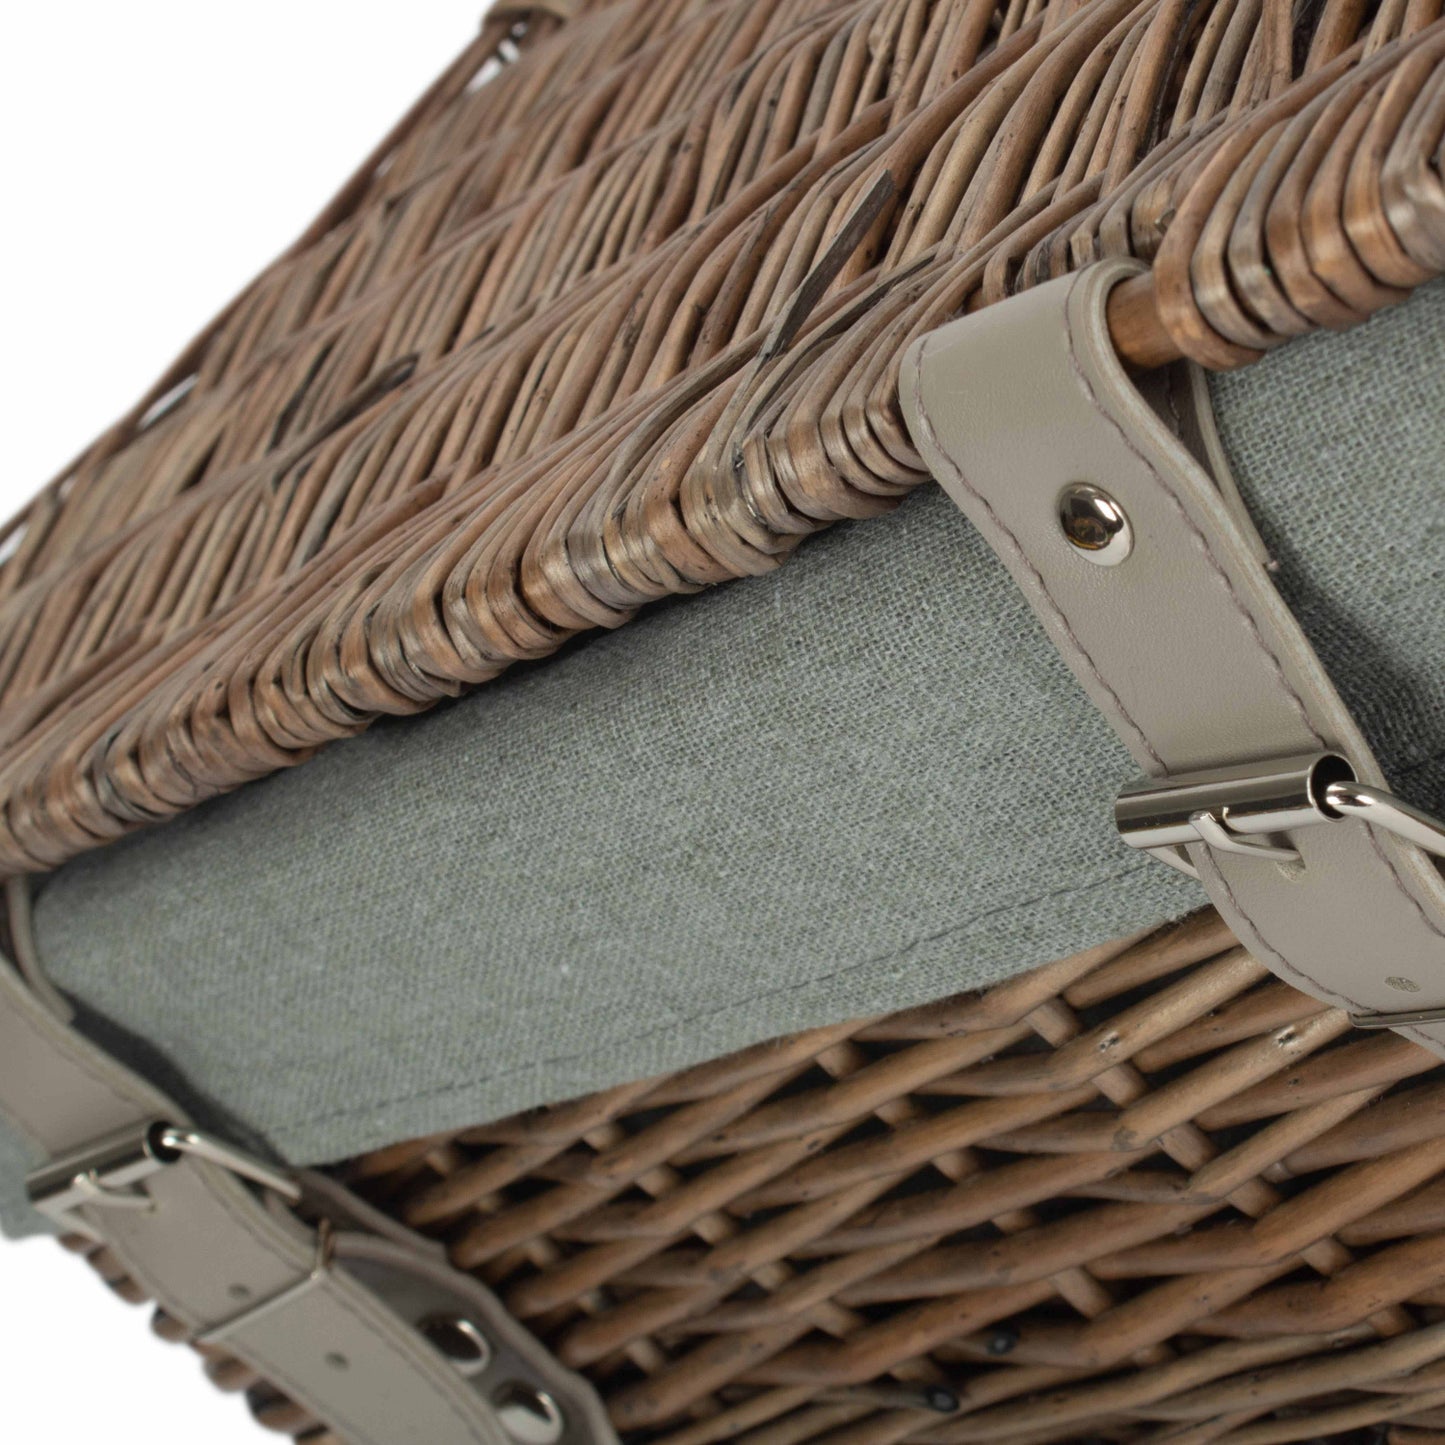 14 Inch Empty Wicker Hamper Basket - Antique Wash - Grey Sage Lining